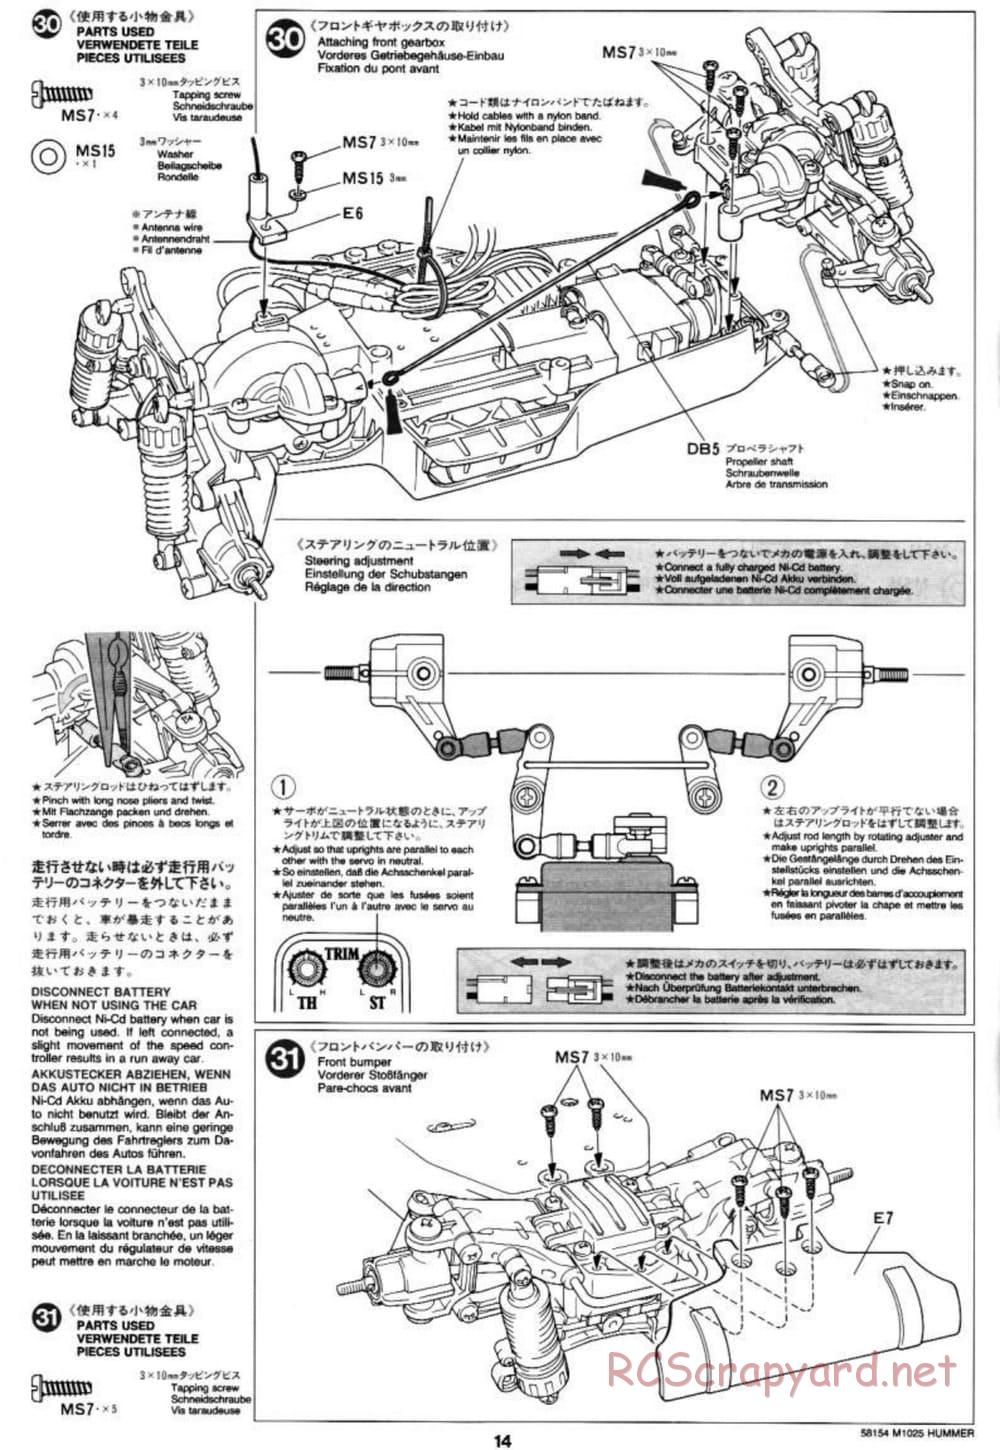 Tamiya - M1025 Hummer - TA-01 Chassis - Manual - Page 14